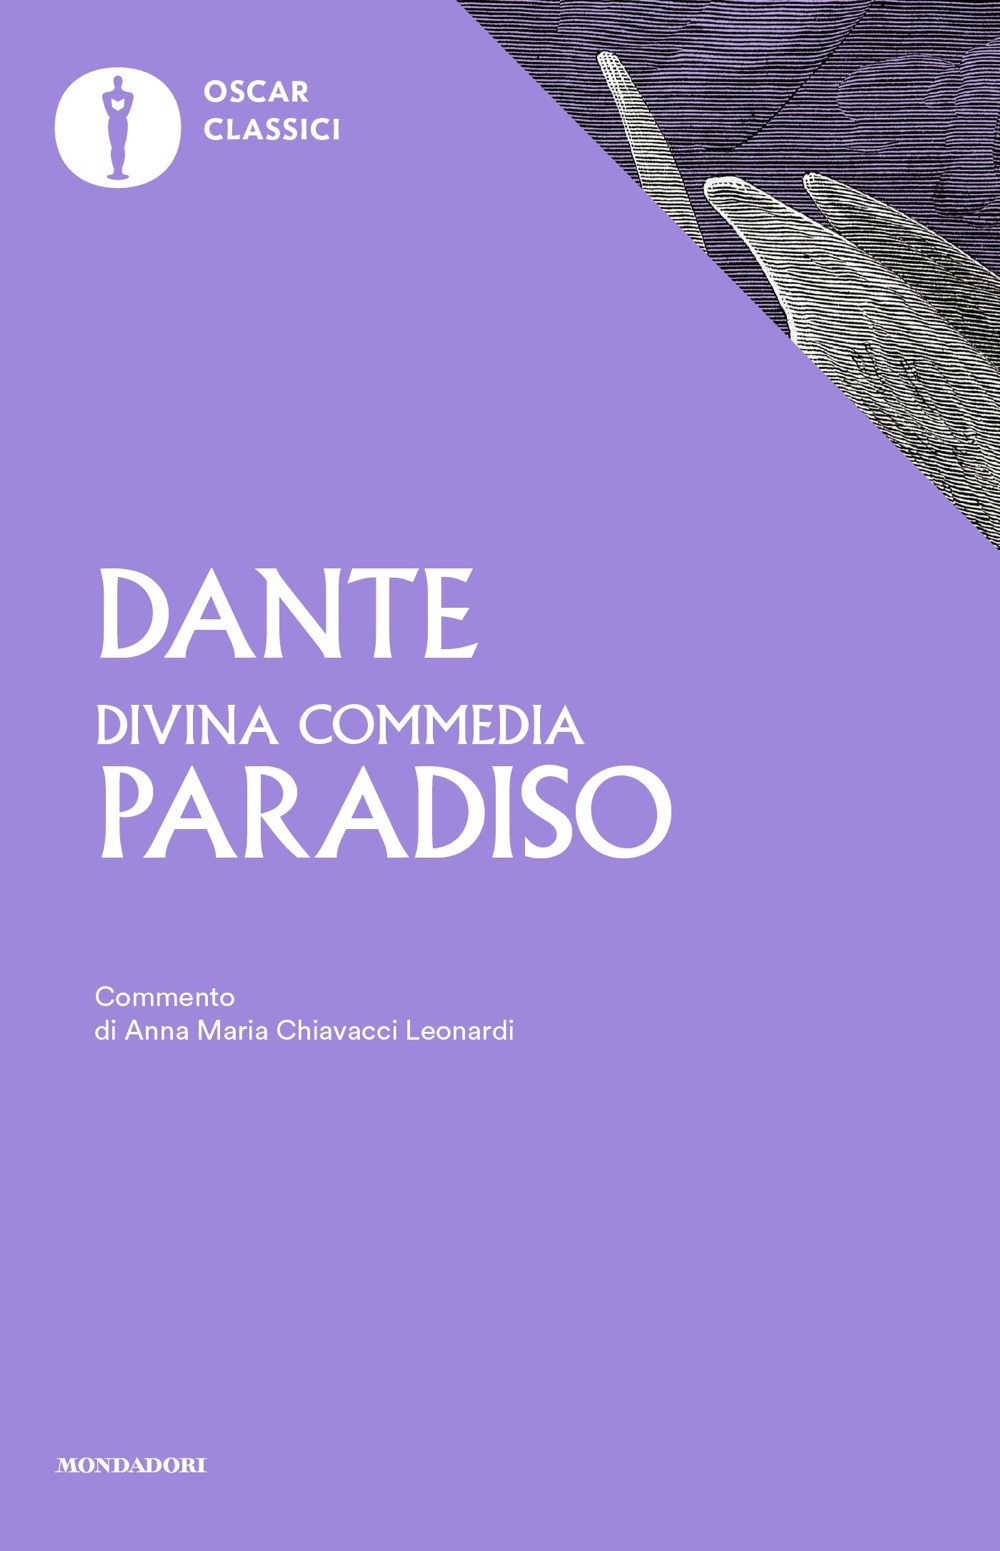 Image of La Divina Commedia. Paradiso